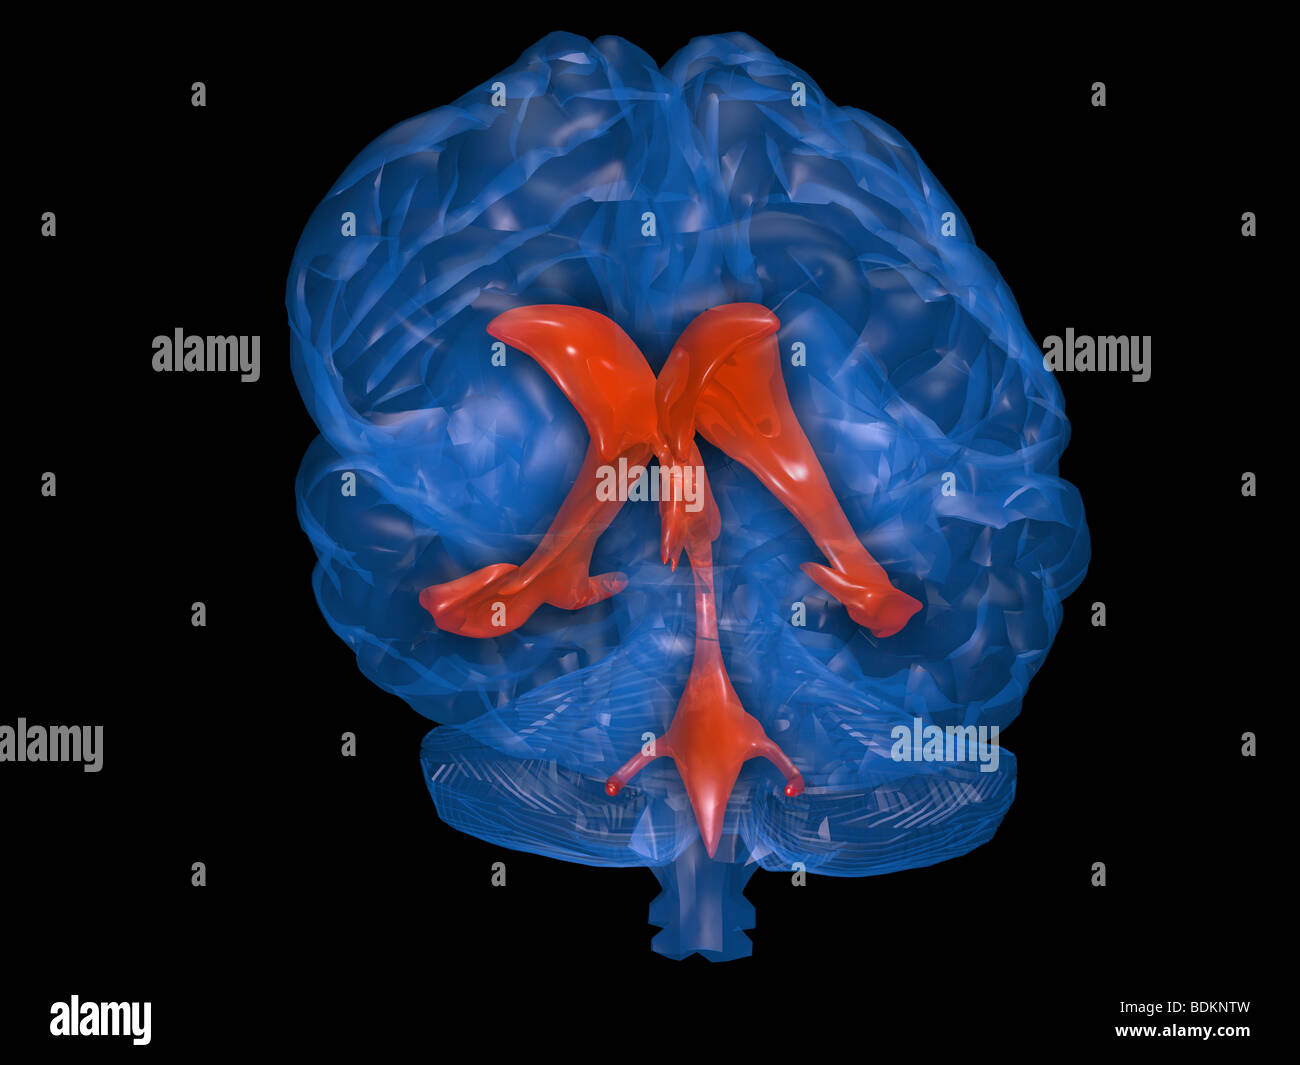 Computer-Grafik-Modell des menschlichen Gehirns zeigt den Standort der zerebralen spinalen Flüssigkeit Ventrikelsystem innerhalb des Gehirns Stockfoto